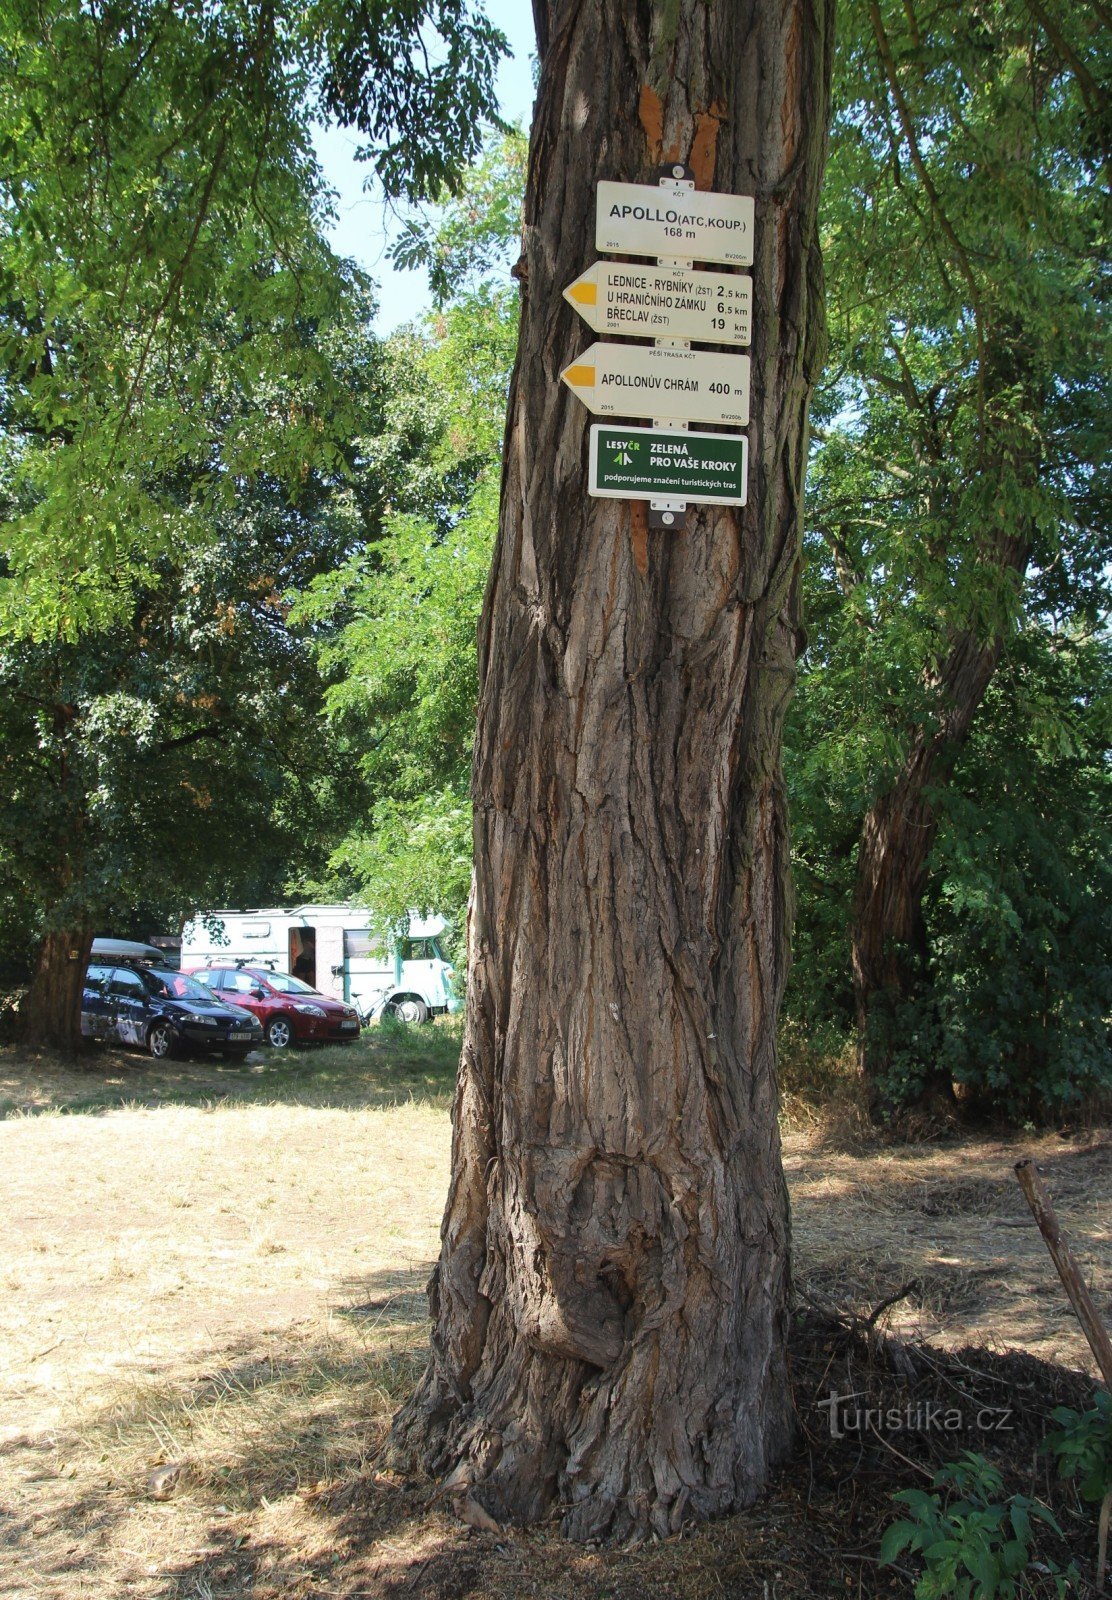 Apollo turistknutpunkt ligger i utkanten av parkeringsplatsen